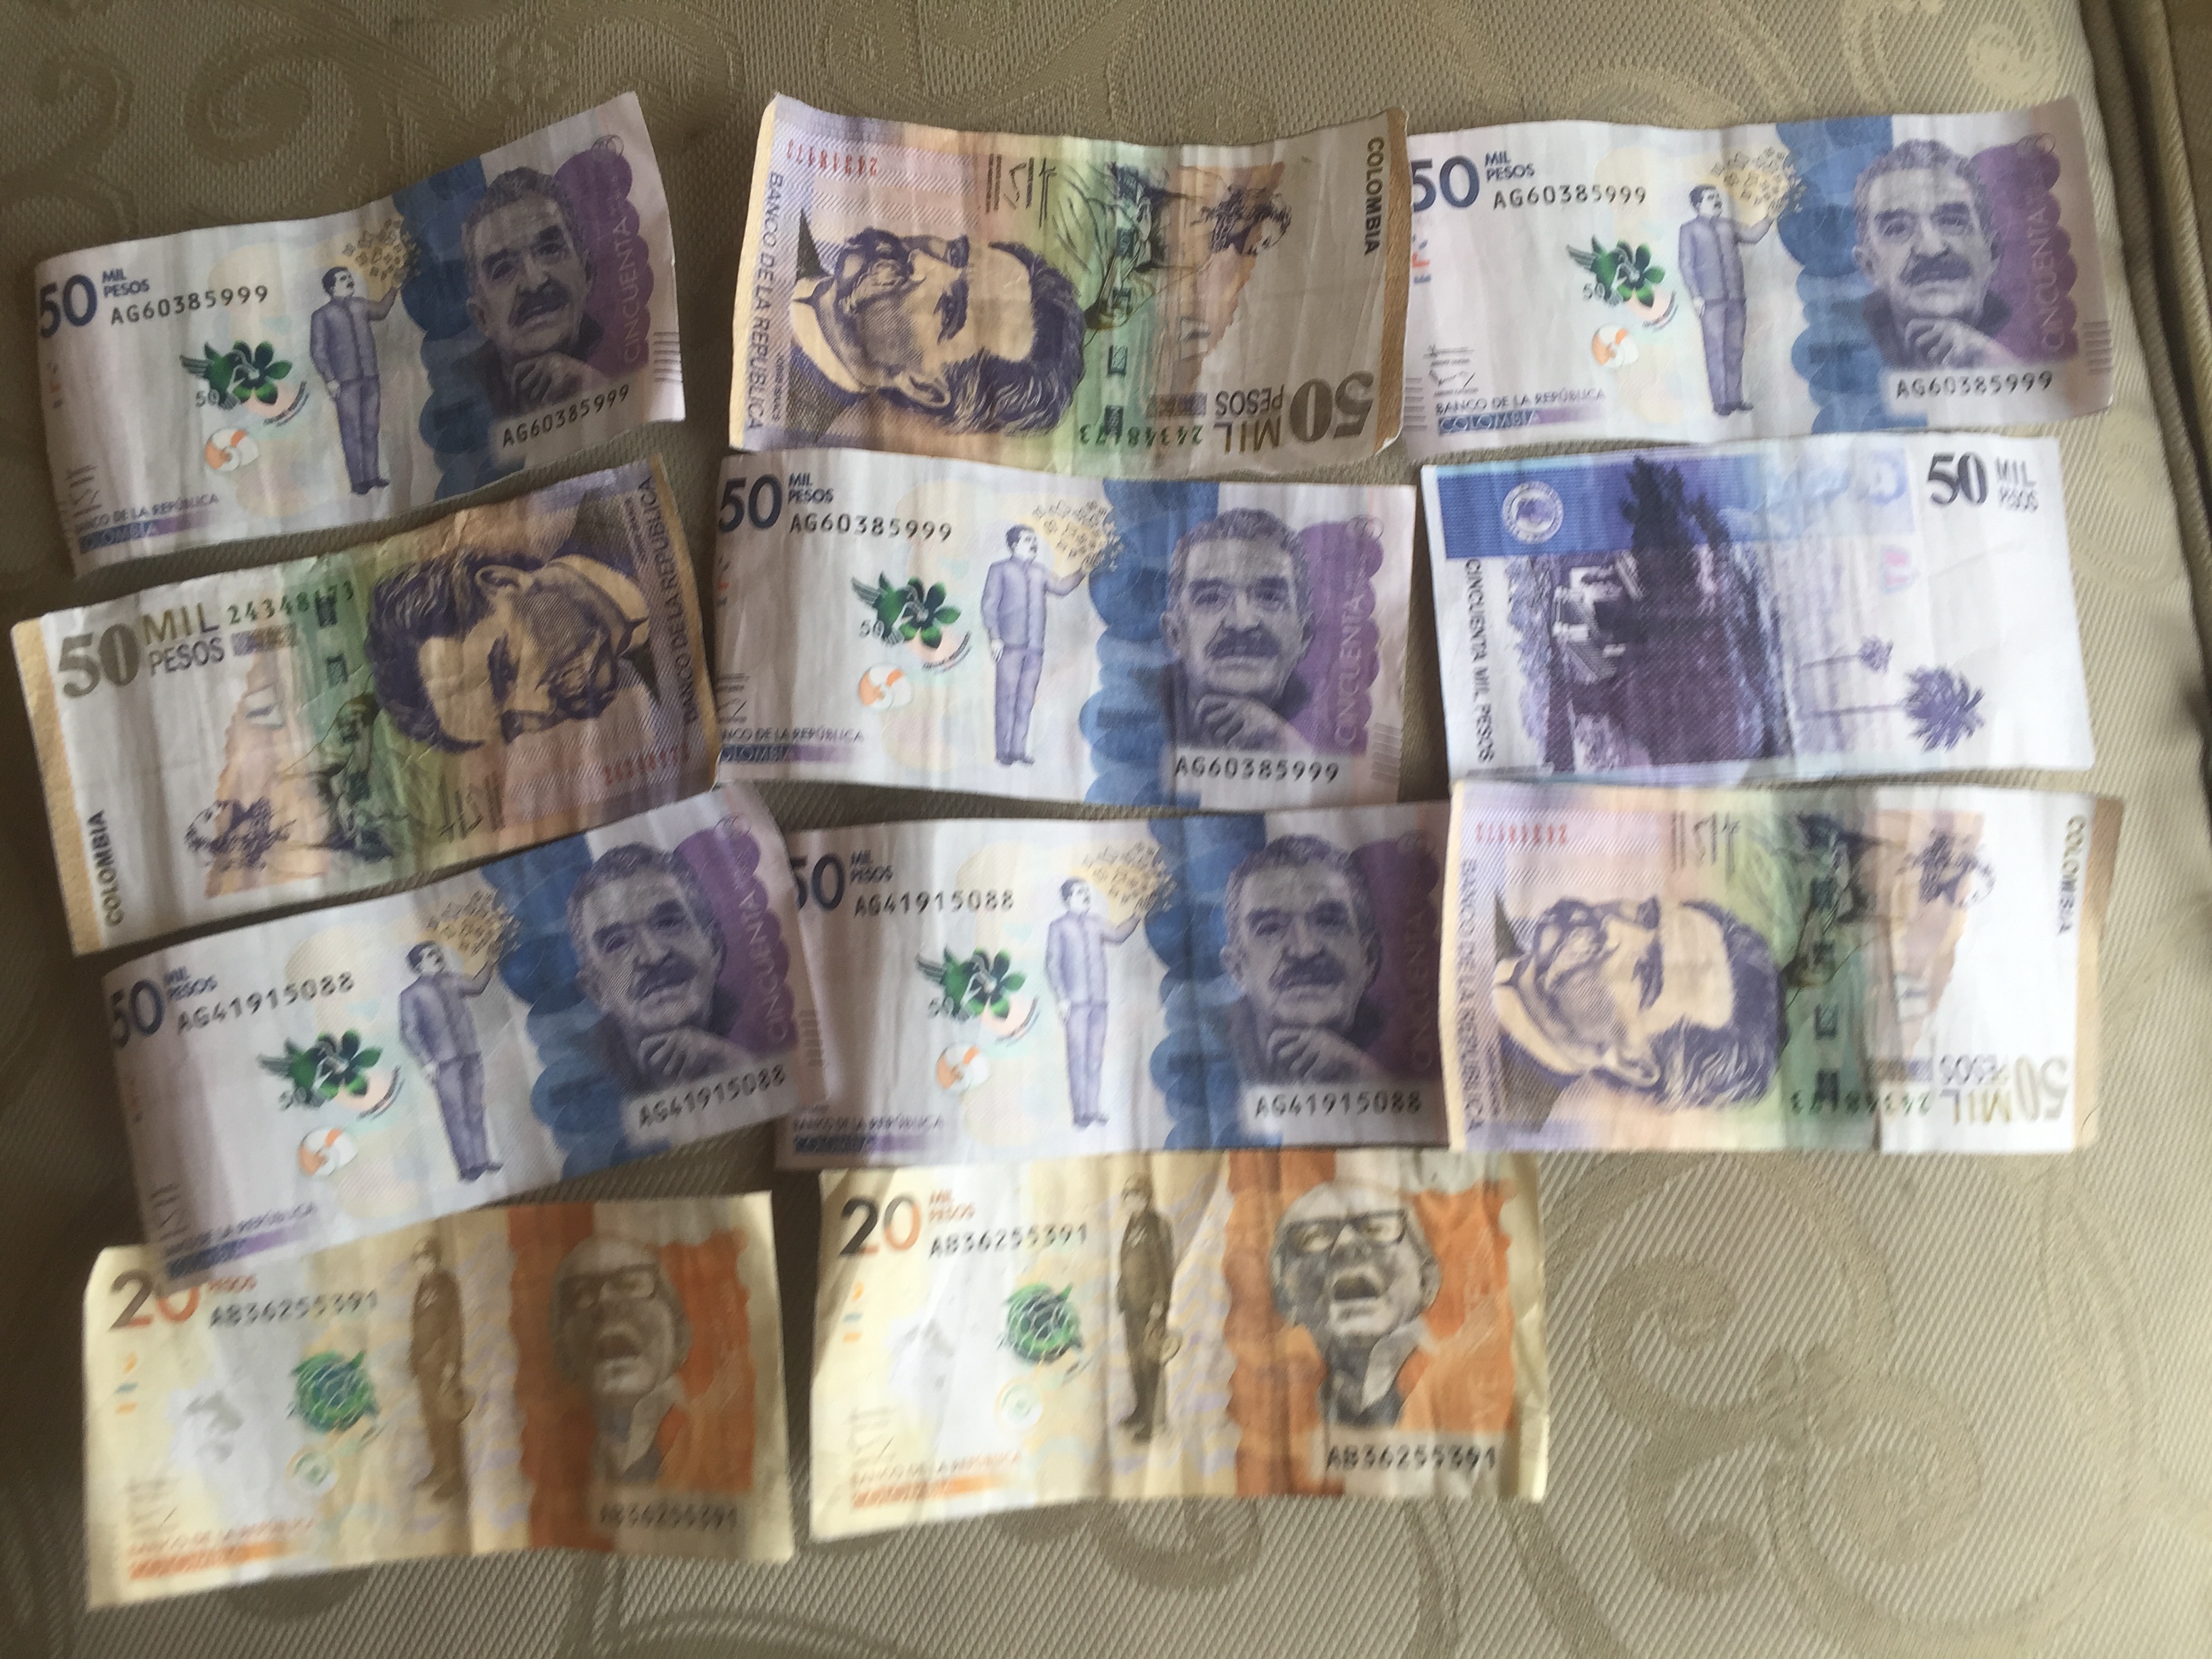 Atención : Lluvia de Billetes falsos en Bogotá , algunos salen de cajeros electrónicos